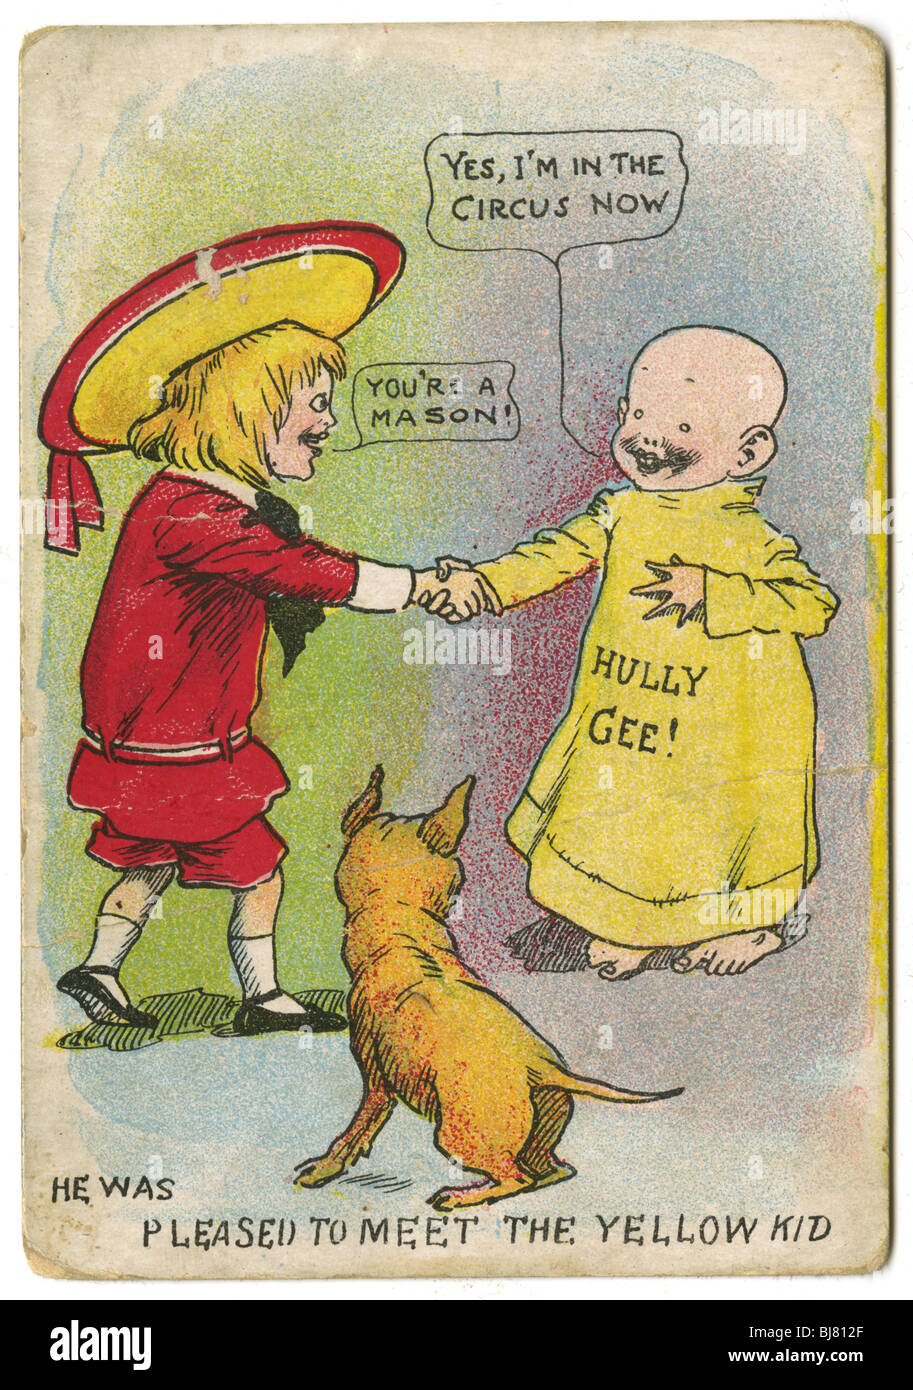 Vers 1904 Buster Brown et le Yellow Kid trading card, avec tige le chien, par R.F. Outcault. Banque D'Images